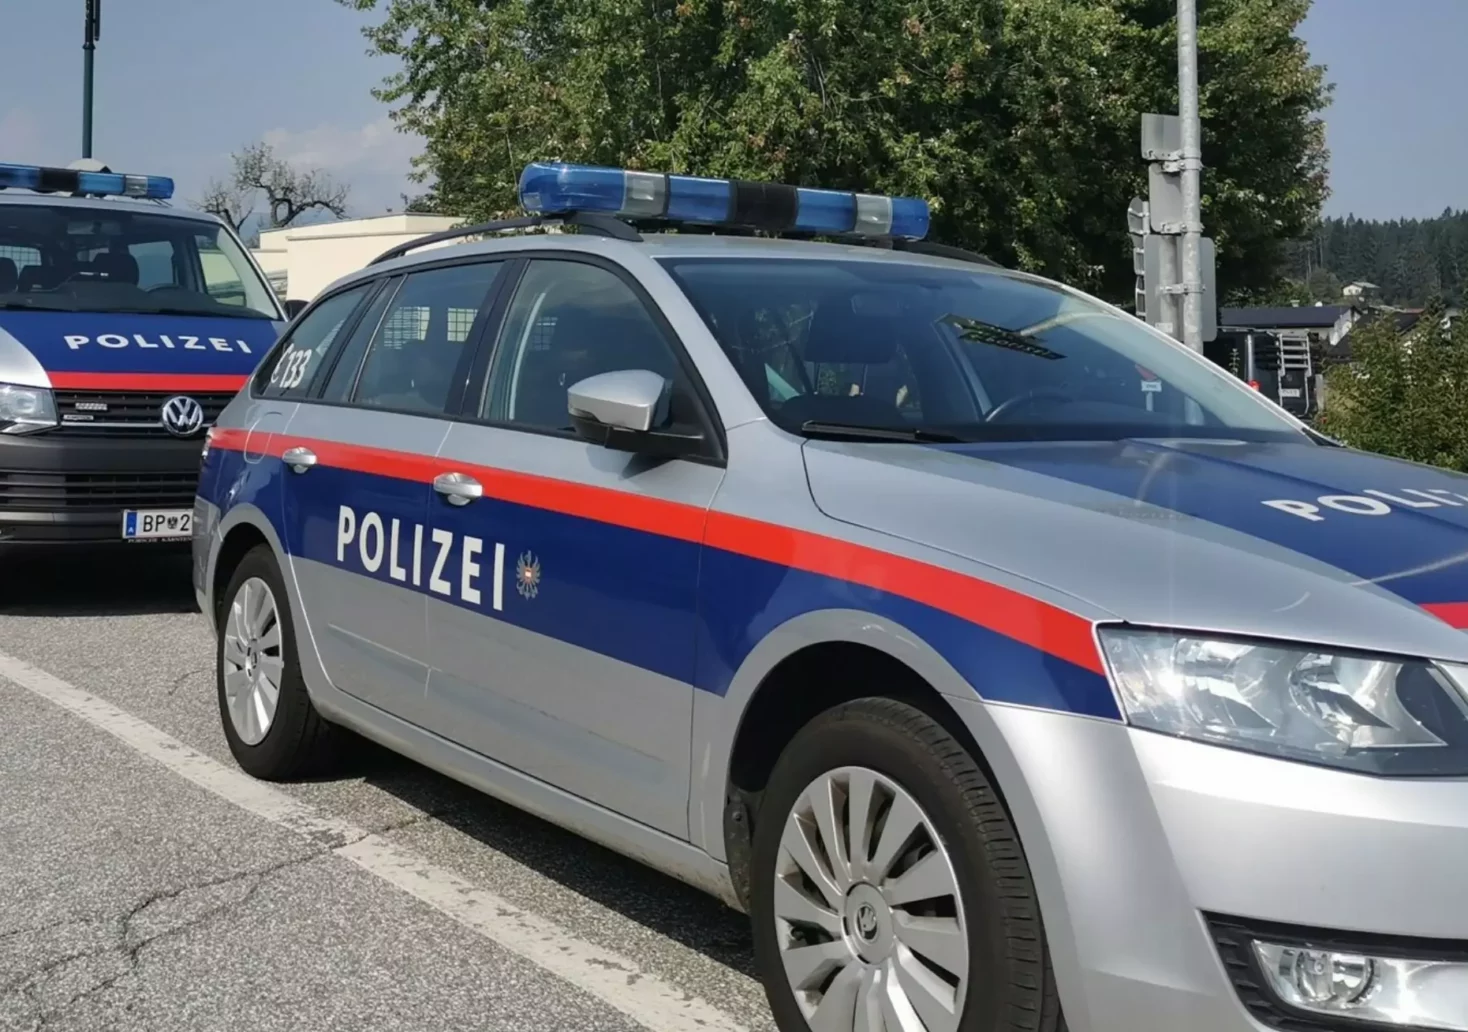 Foto in Beitrag von 5min.at: Zu sehen sind mehrere Polizeiautos in Villach Landskron.